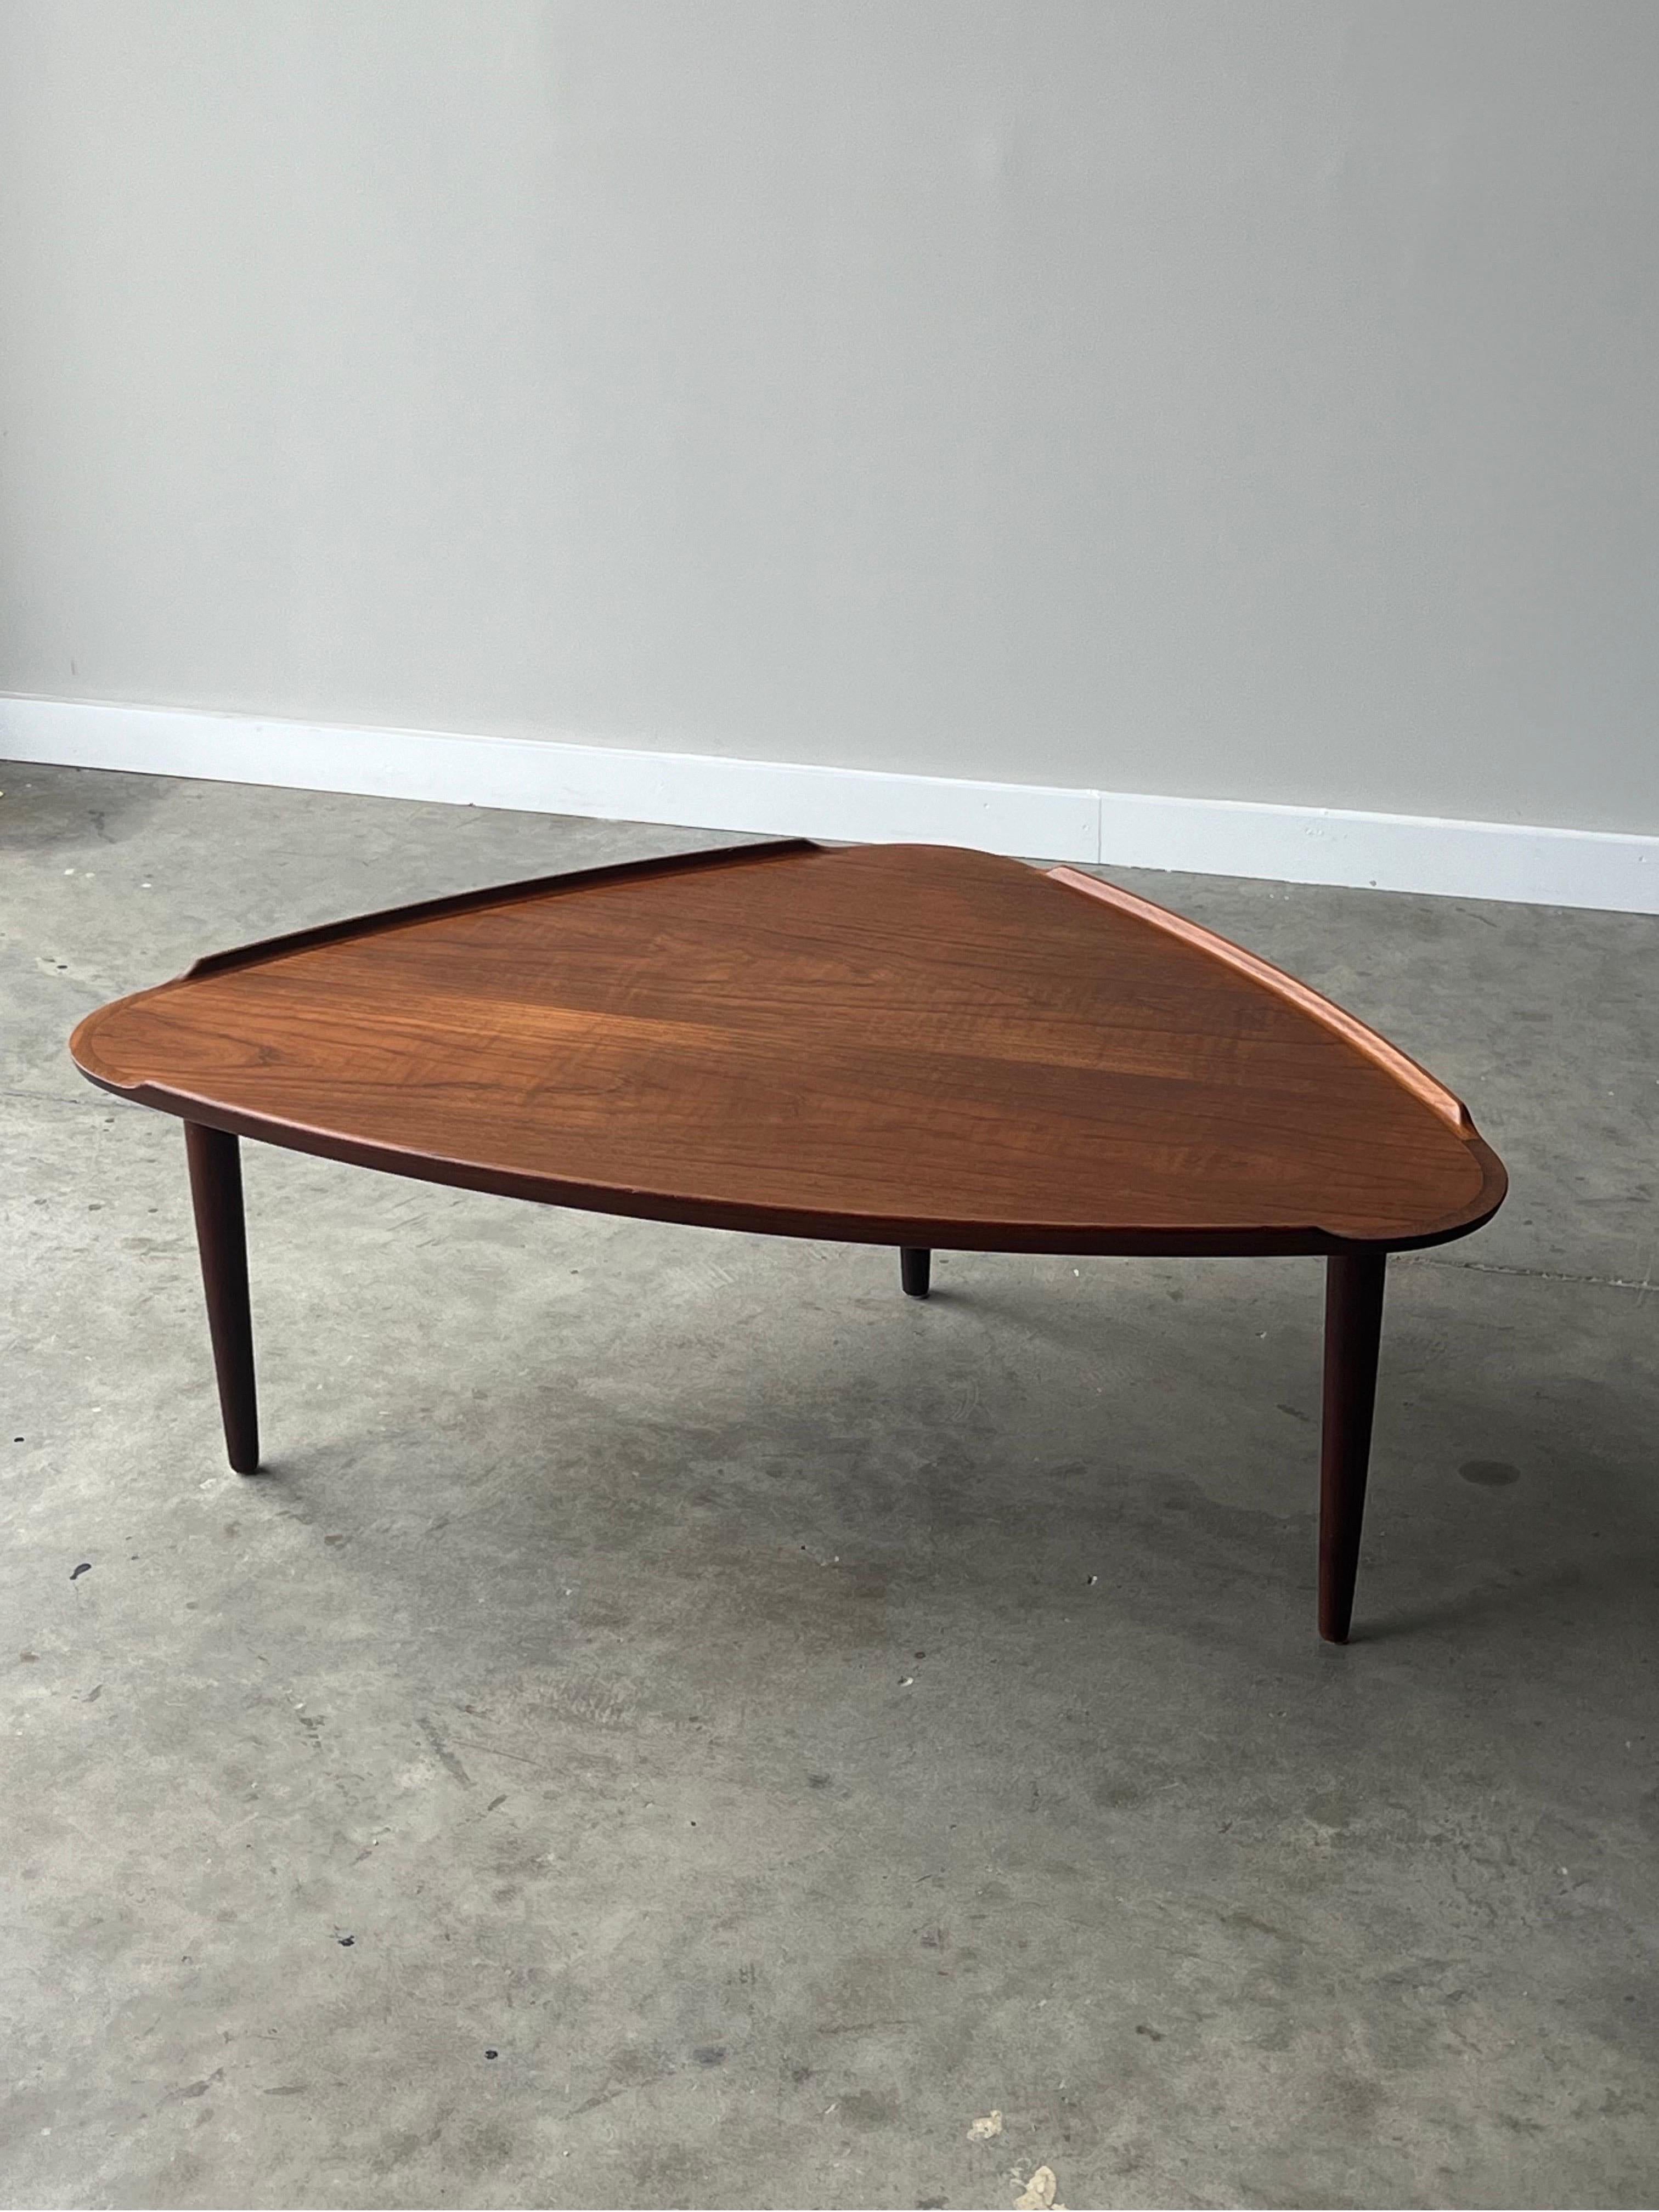 Spectaculaire table basse triangulaire à trépied de l'équipe moderne danoise des années 1960, conçue par Aakjaer Jorgensen. Forme de médiator de guitare avec rebords sculptés. Trois pieds ronds et effilés en teck. Rappelant les designs de Greta Jalk